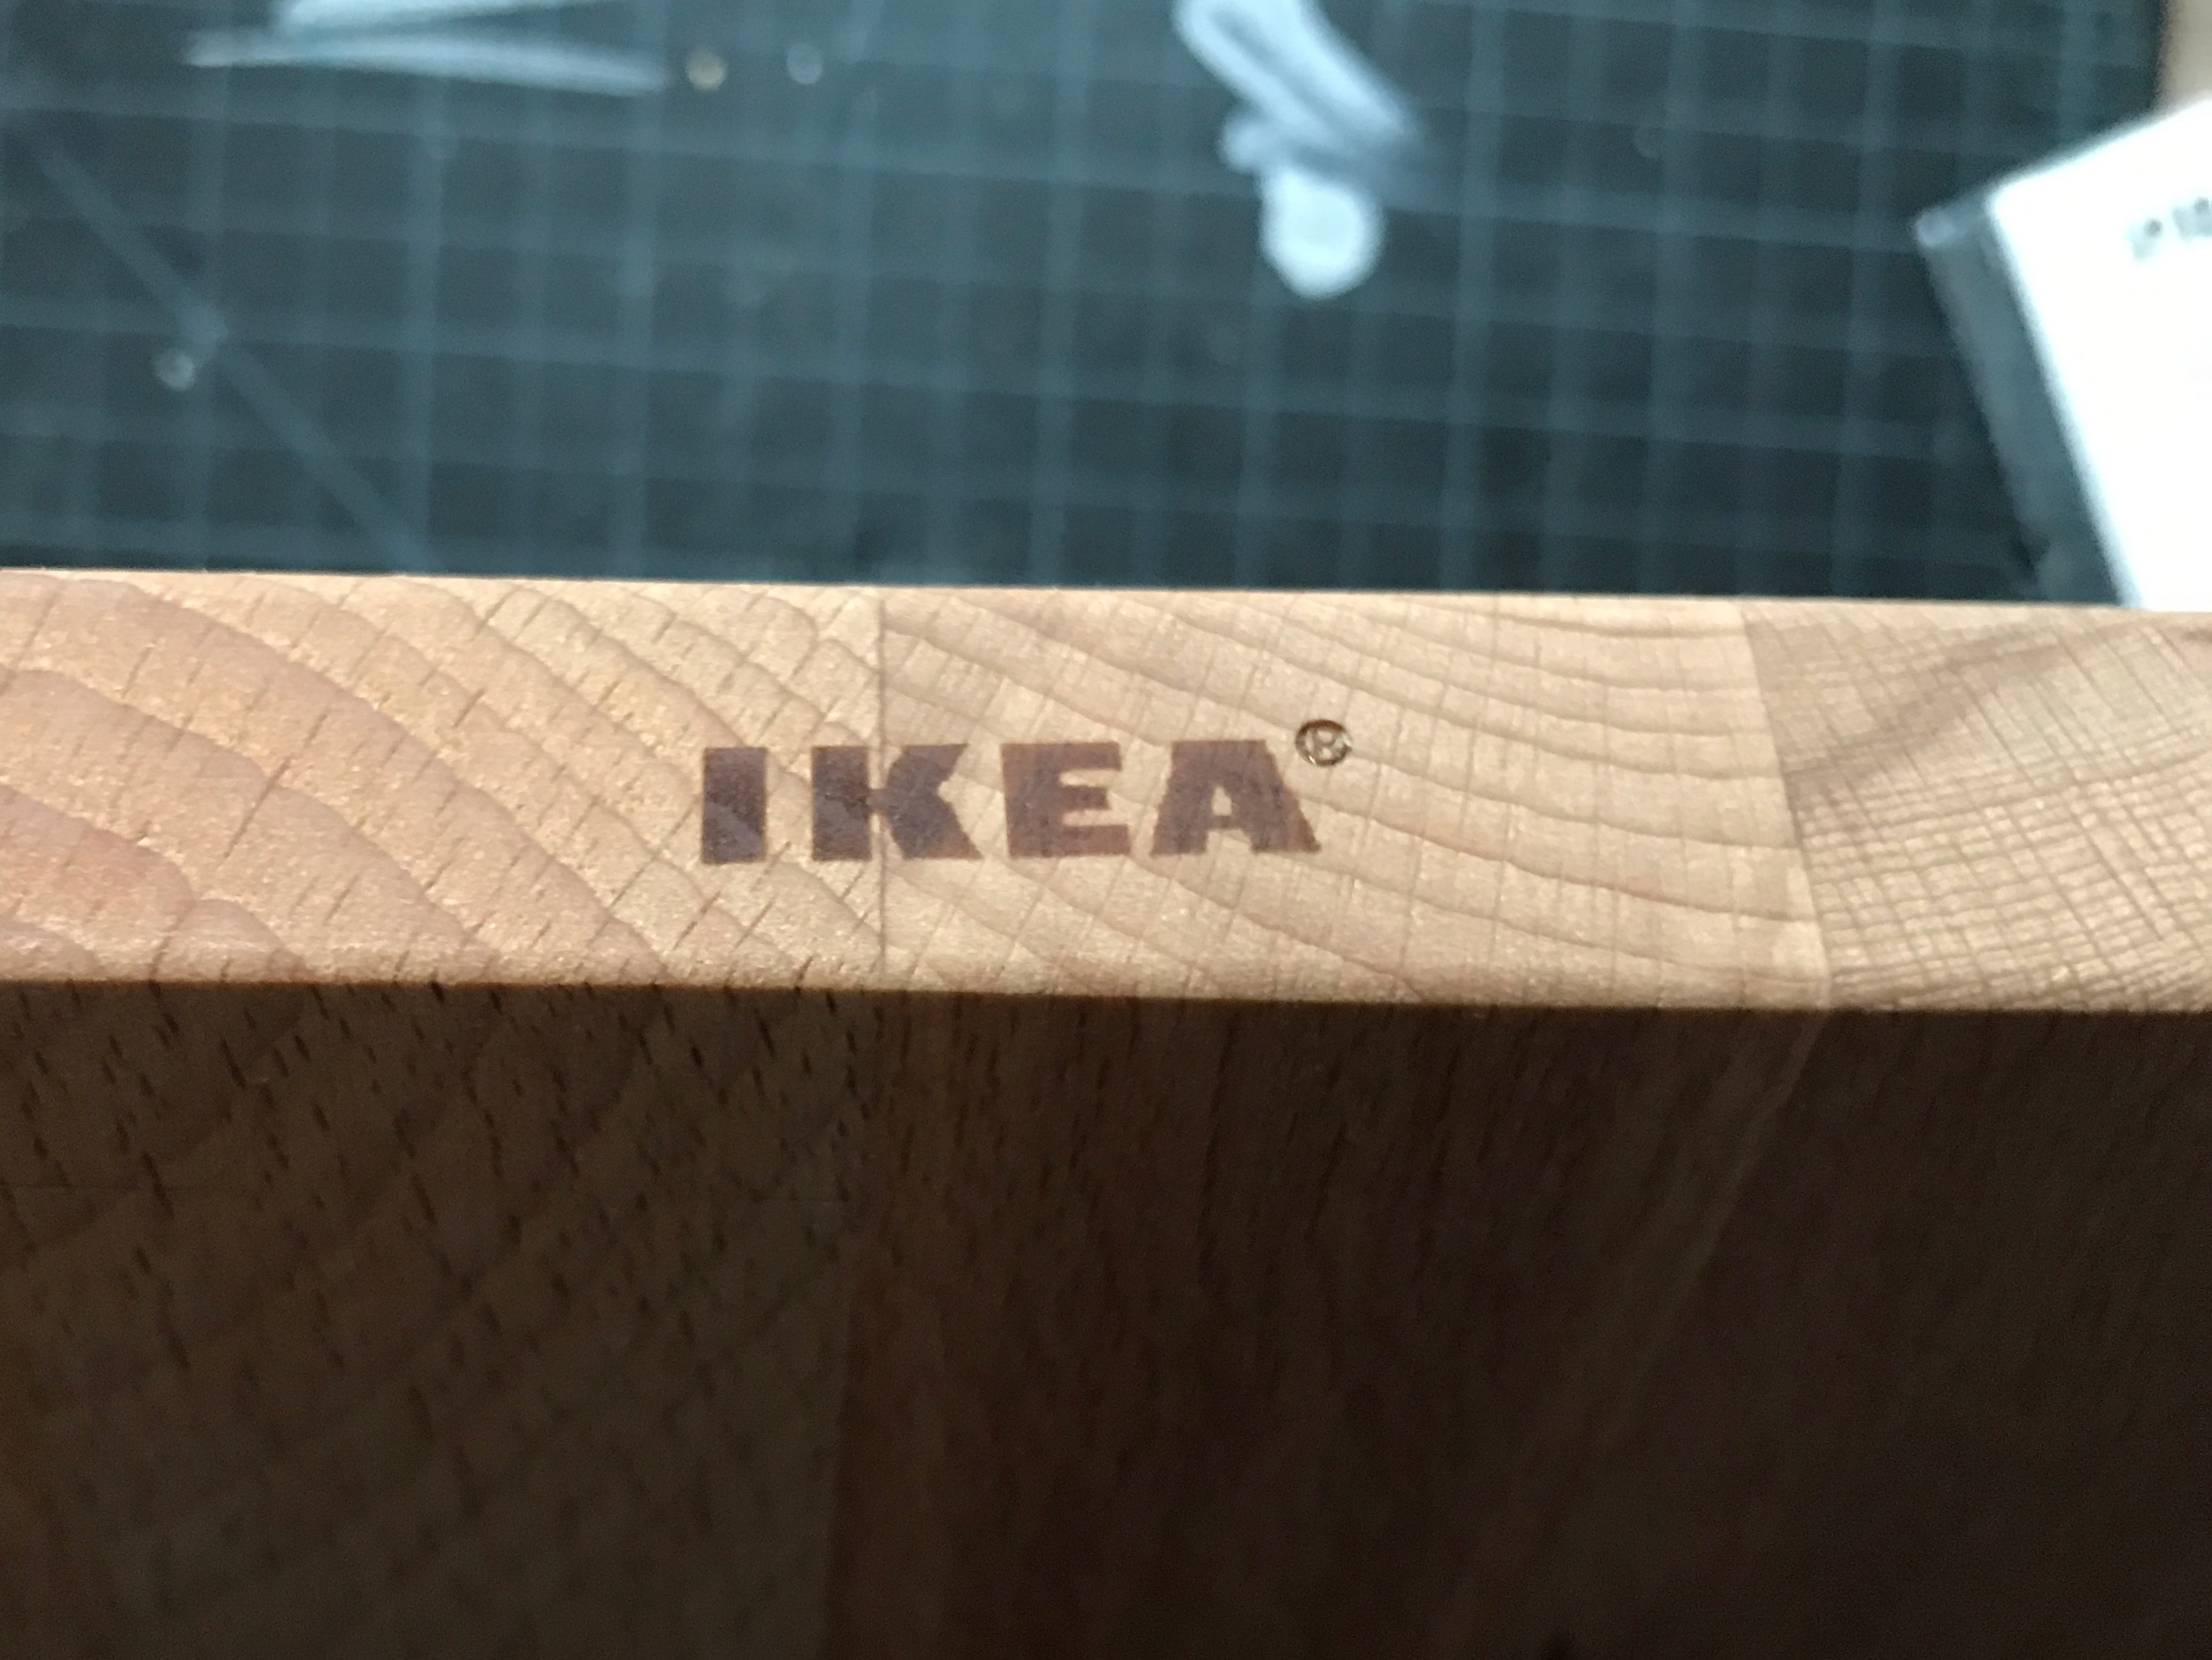 Cutting boards splitting : r/IKEA